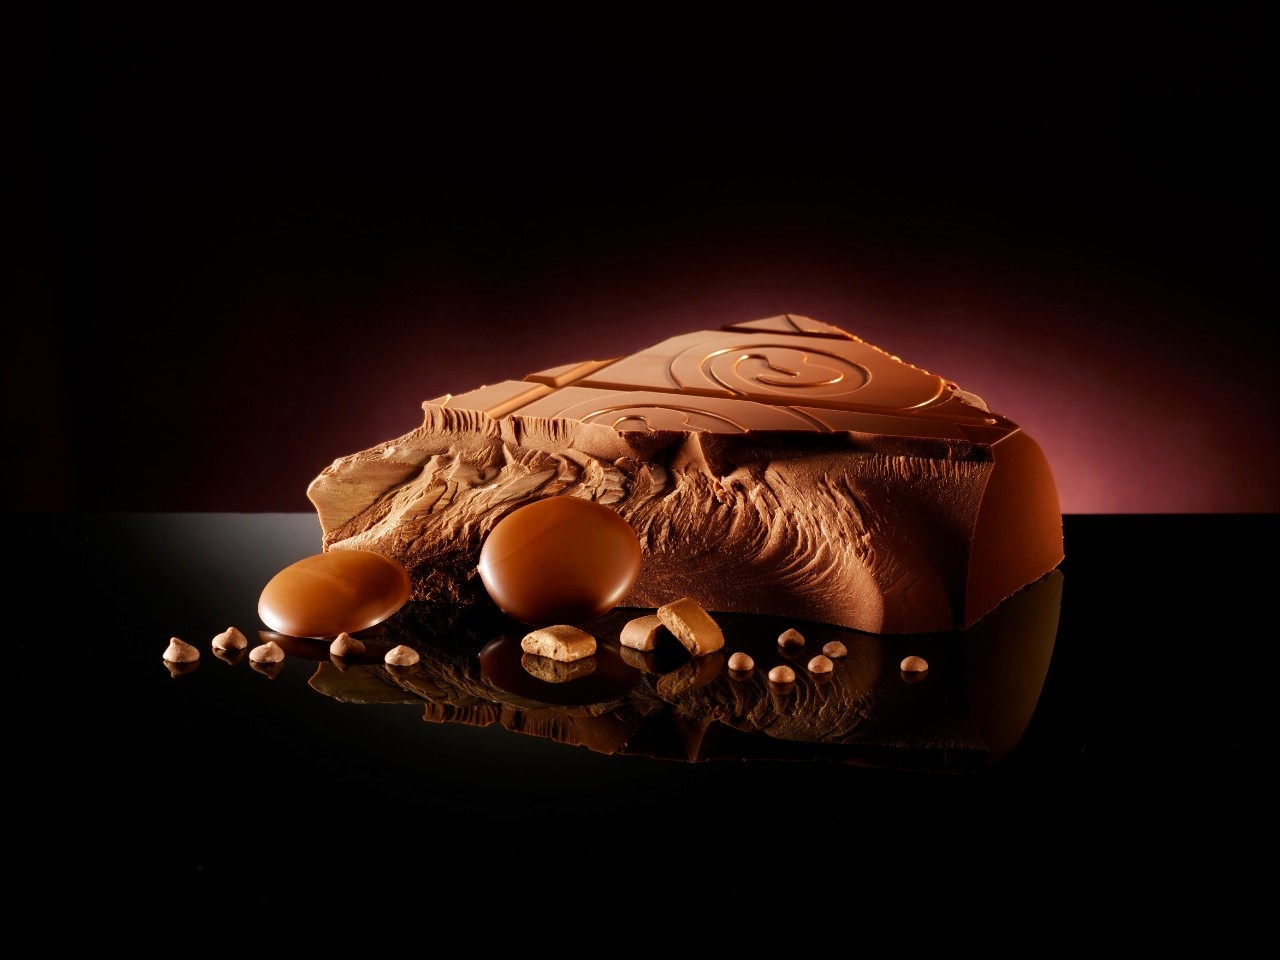 Шоколад молочный Belcolade Ле Селексьон 35% какао от кондитерского магазина Фрезье https://fraisier.ru